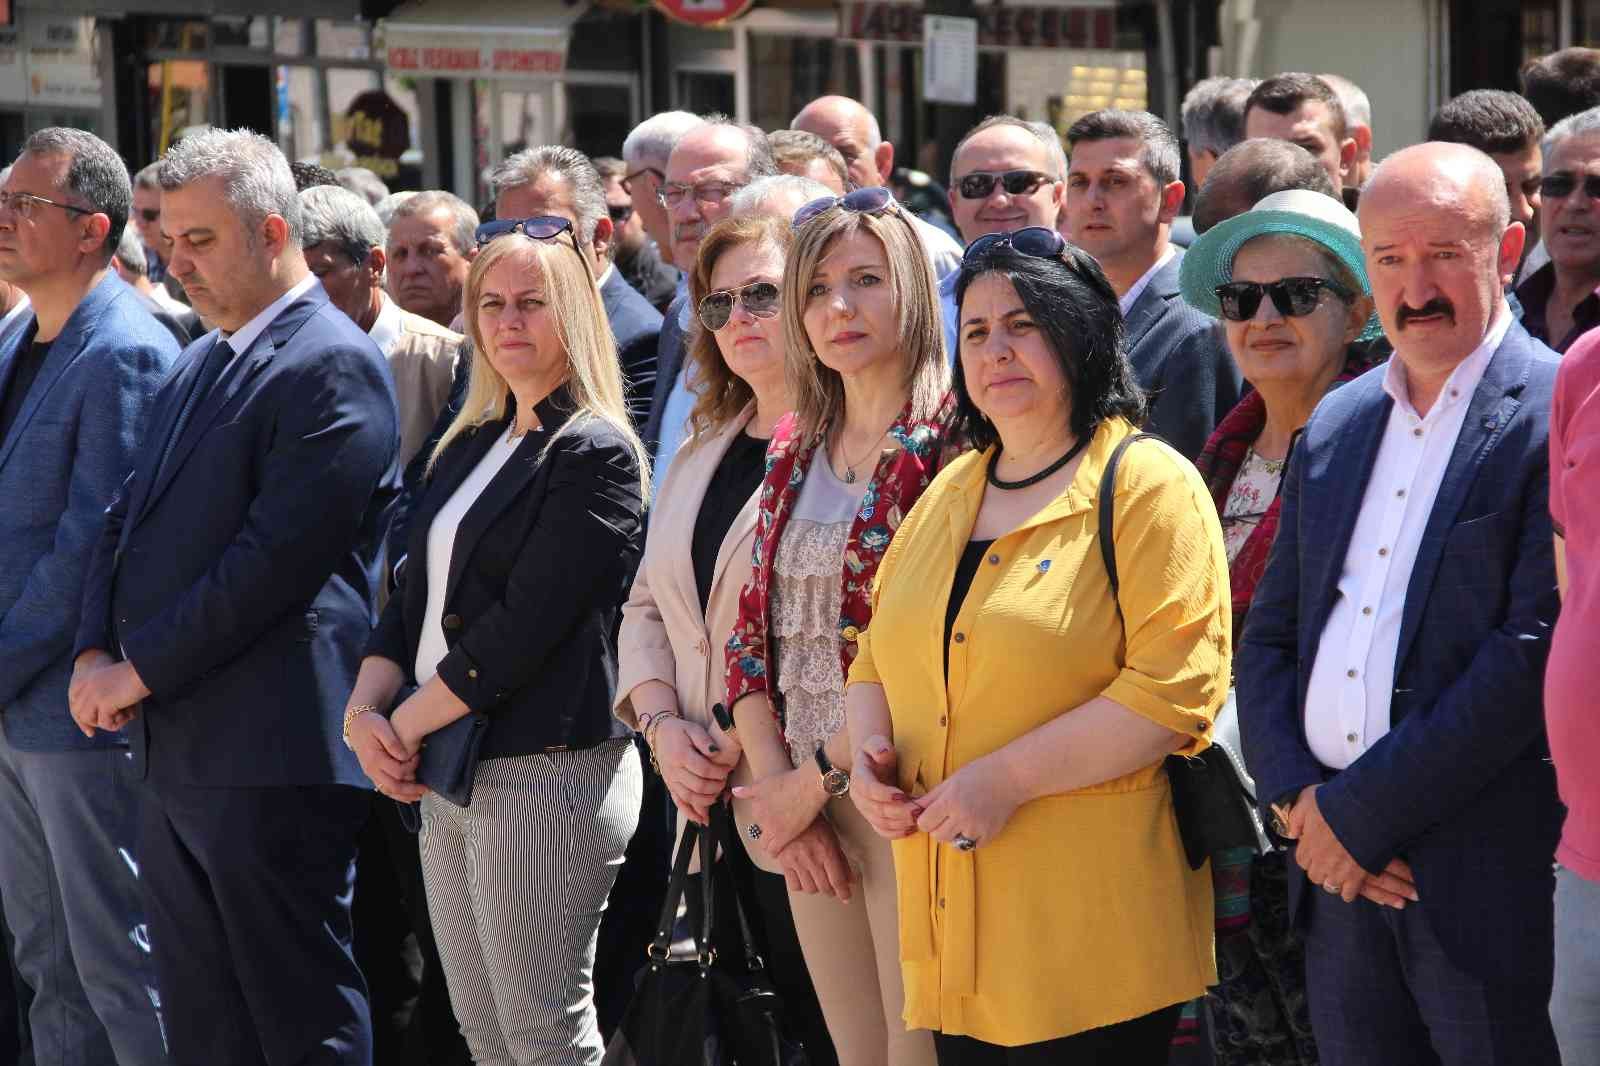 Tekirdağ’ın Malkara ilçesinde 14 Mayıs Çiftçiler Günü çeşitli etkinliklerle kutlandı. Malkara Ziraat Odası Başkanlığı tarafından Atatürk Anıtı ...